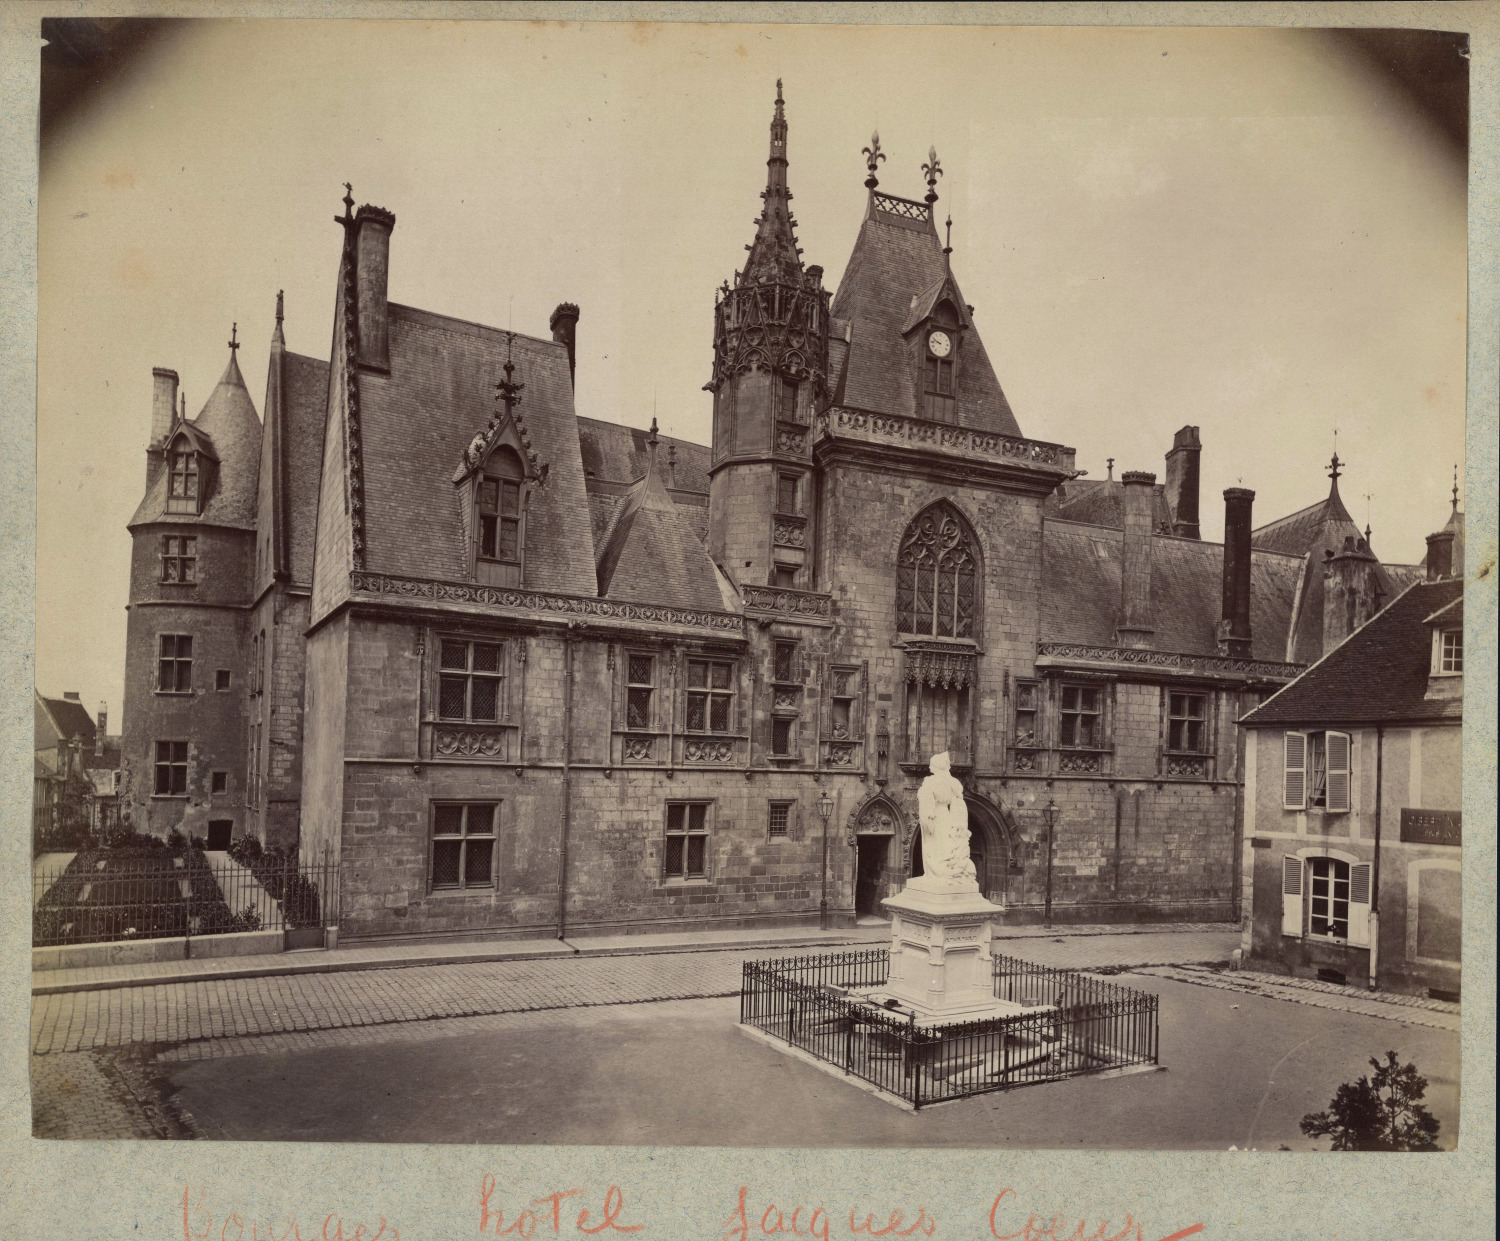 France, Bourges, Palais Jacques Coeur vintage albumen print albumin print 